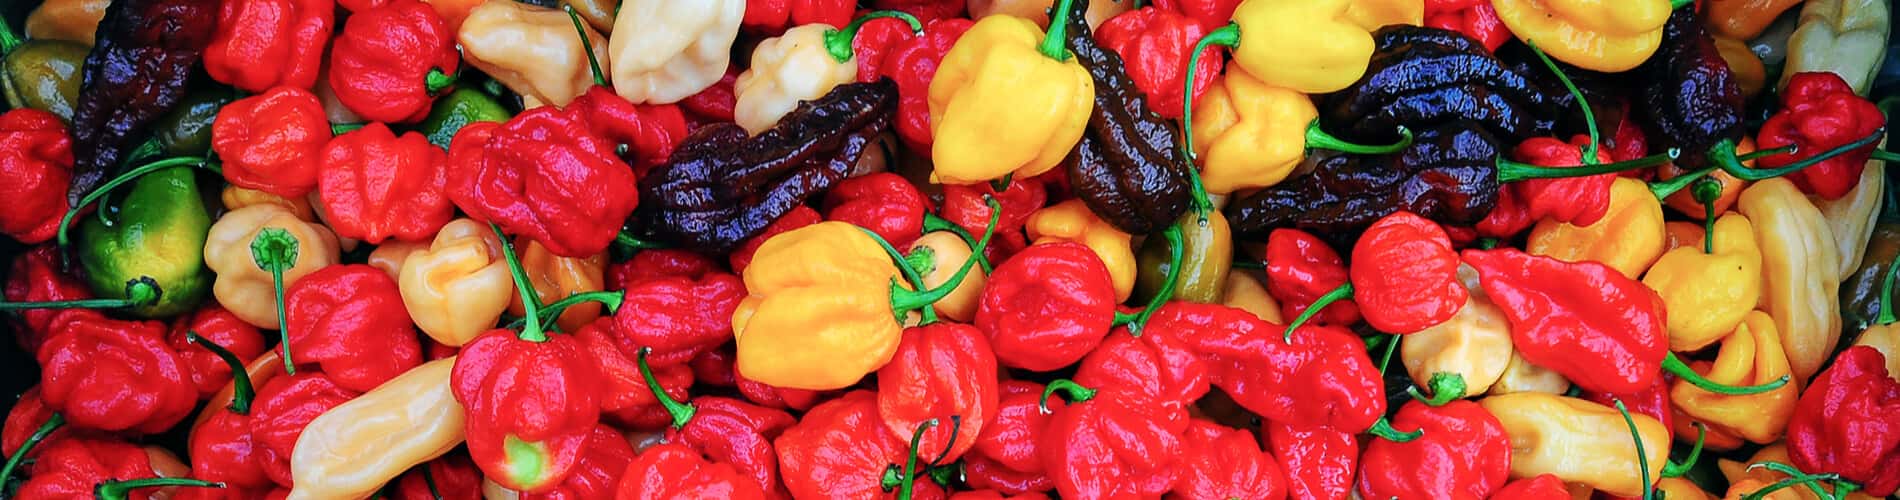 Chilis haltbar machen: Tipps für den Ernteüberschuss